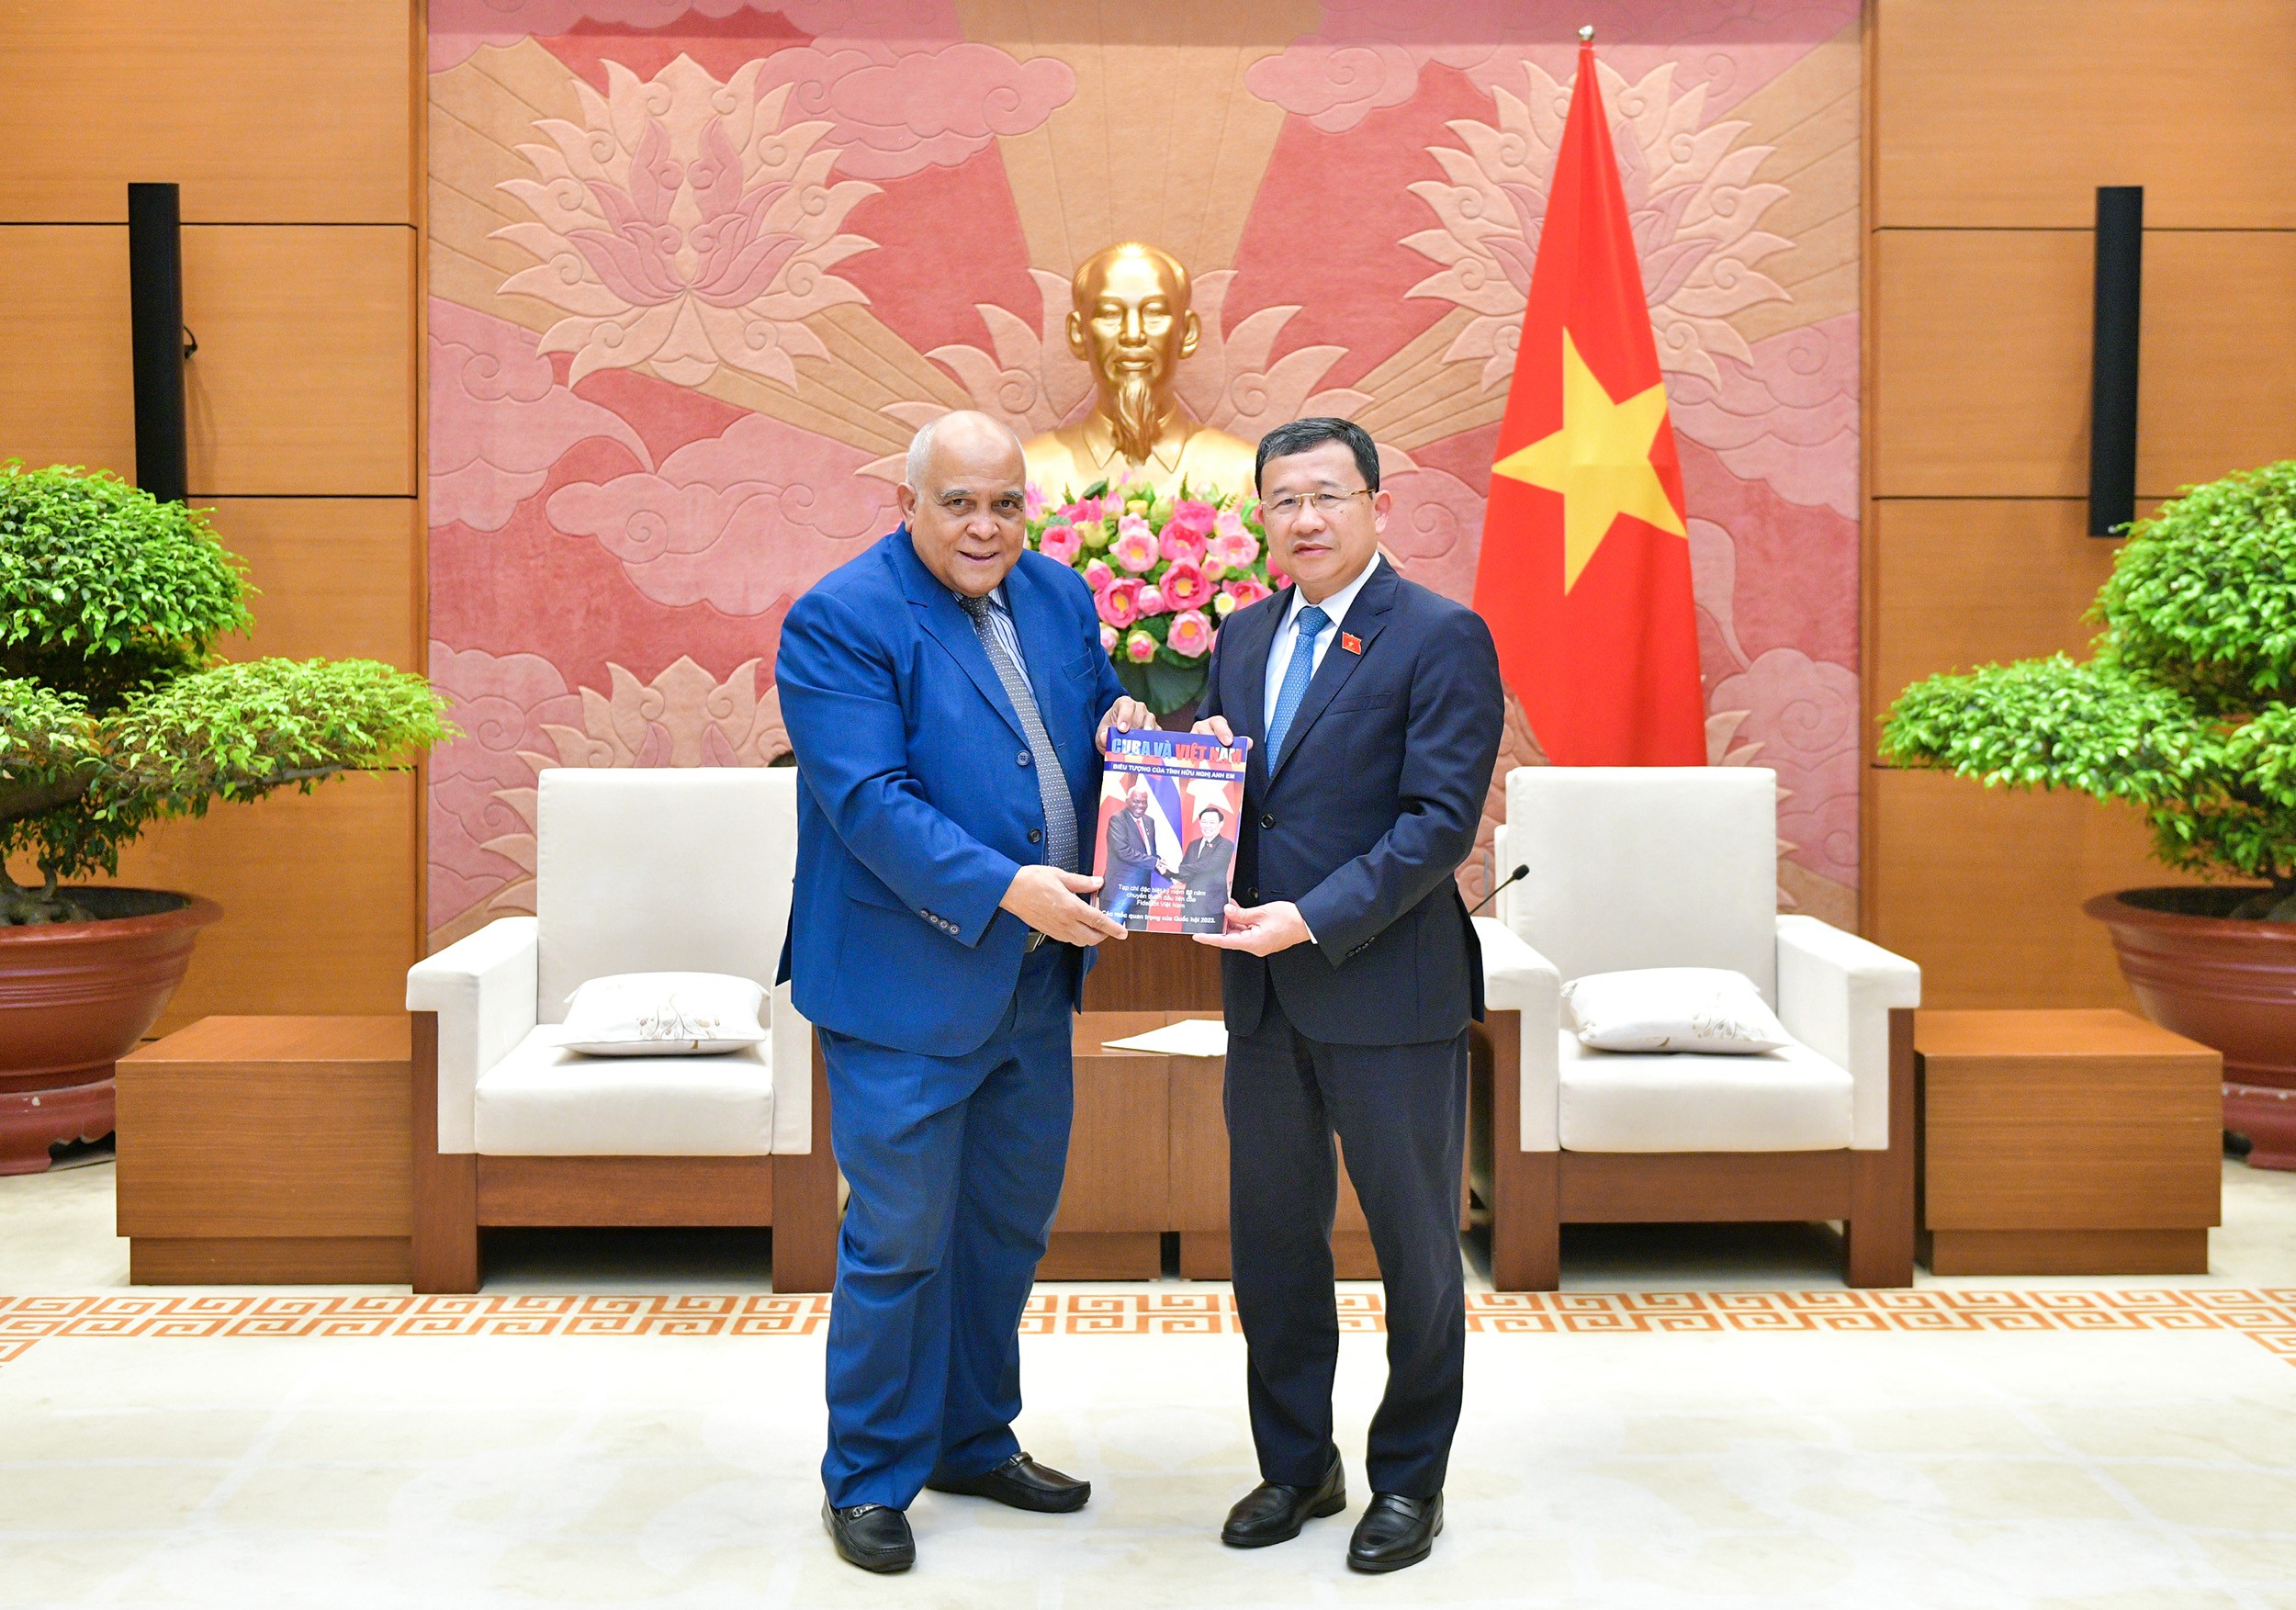 Đại sứ Orlando Hernández Guillén đã trao tặng Quốc hội Việt Nam cuốn Đặc san “Cuba và Việt Nam: Biểu tượng của tình hữu nghị anh em”.